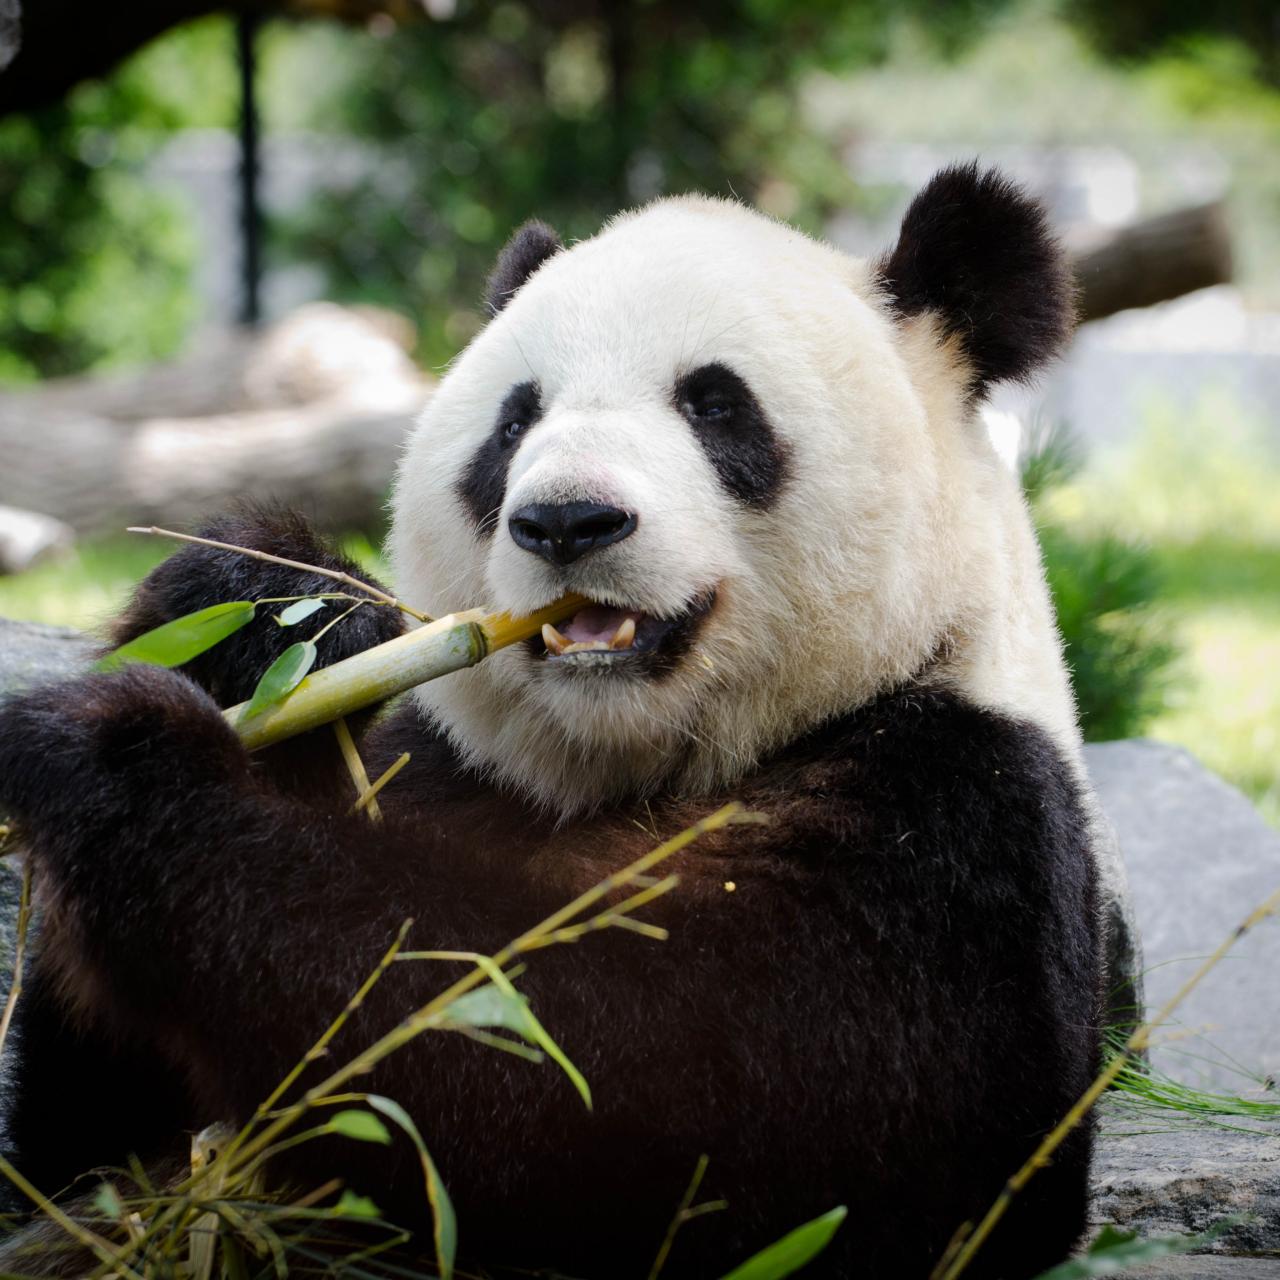 pandas eating bamboo